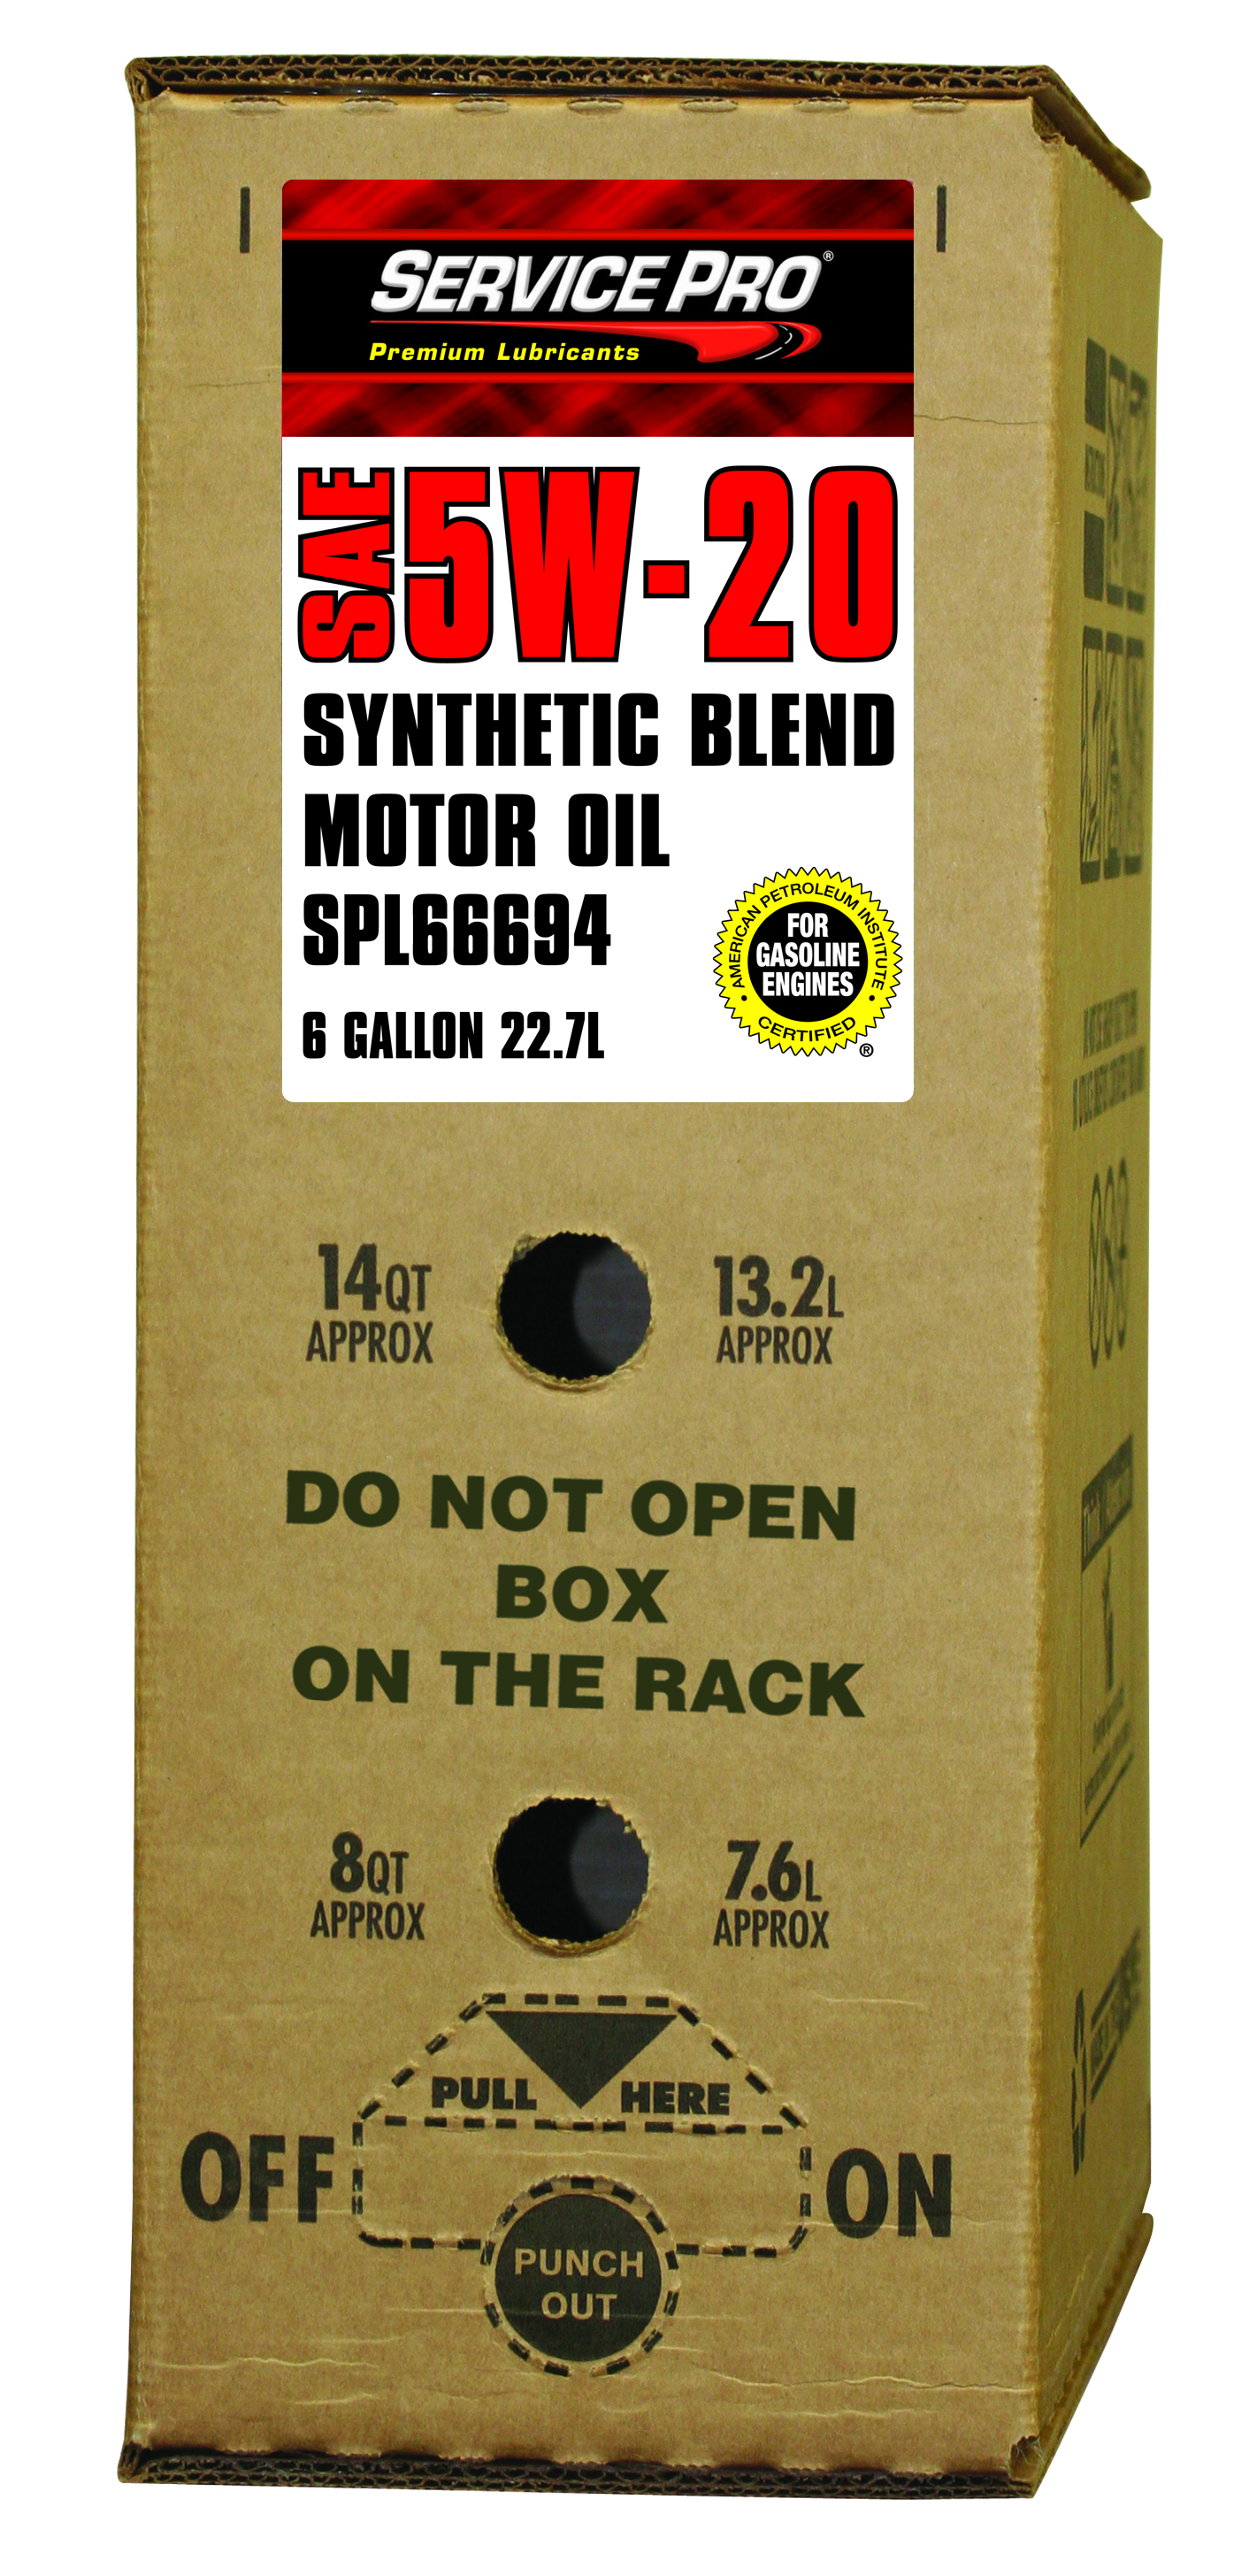 OIL-SERVICE PRO 5W20 SN GF-6
SYN BLEND (6GAL BOX) SPL66694